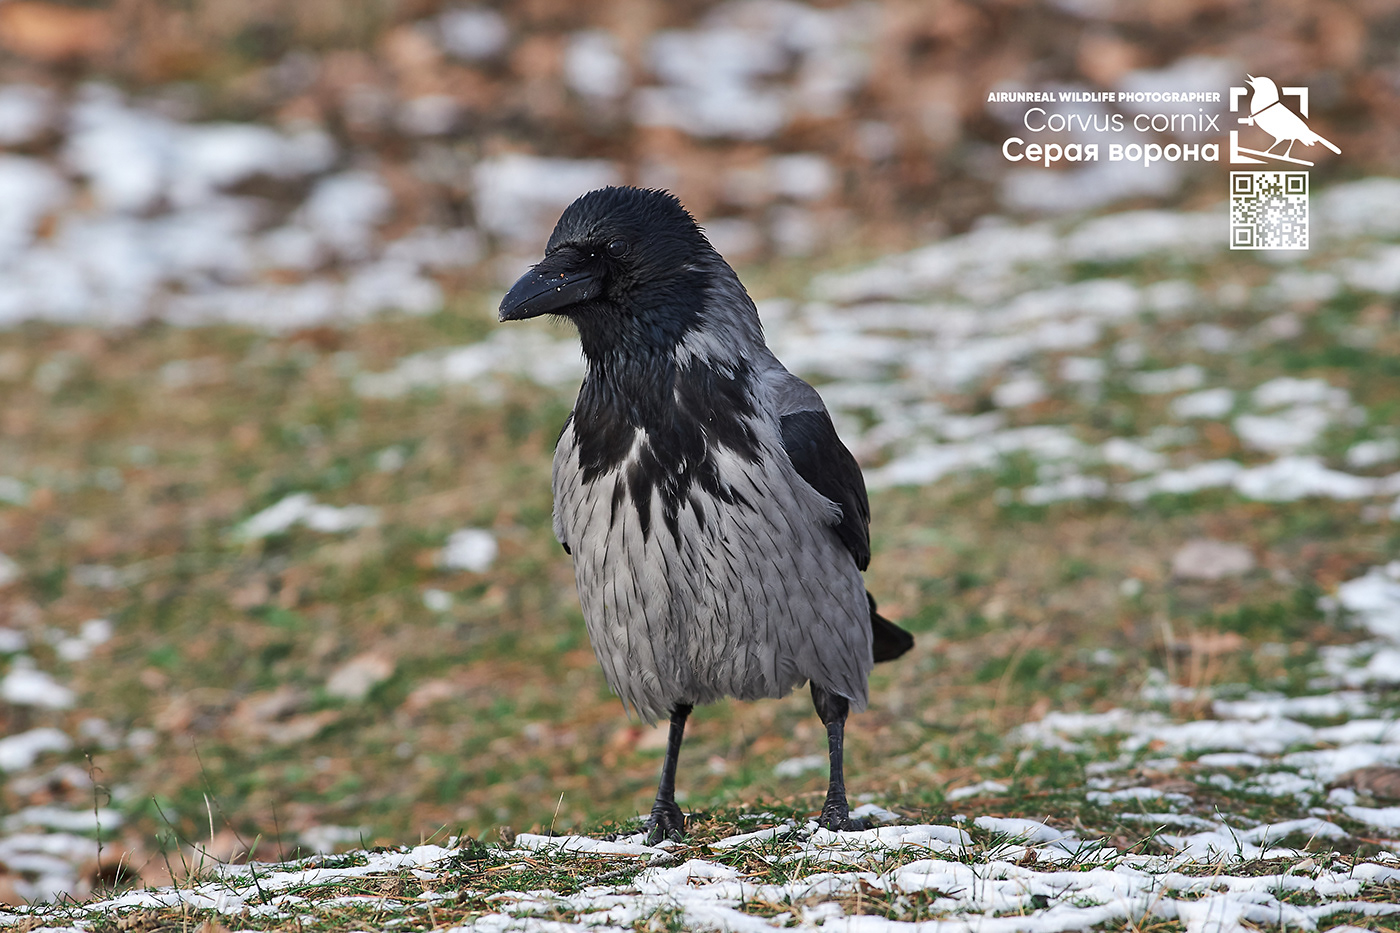 bird birds birdswatching volgograd Russia wildlife Corvus cornix hooded crow